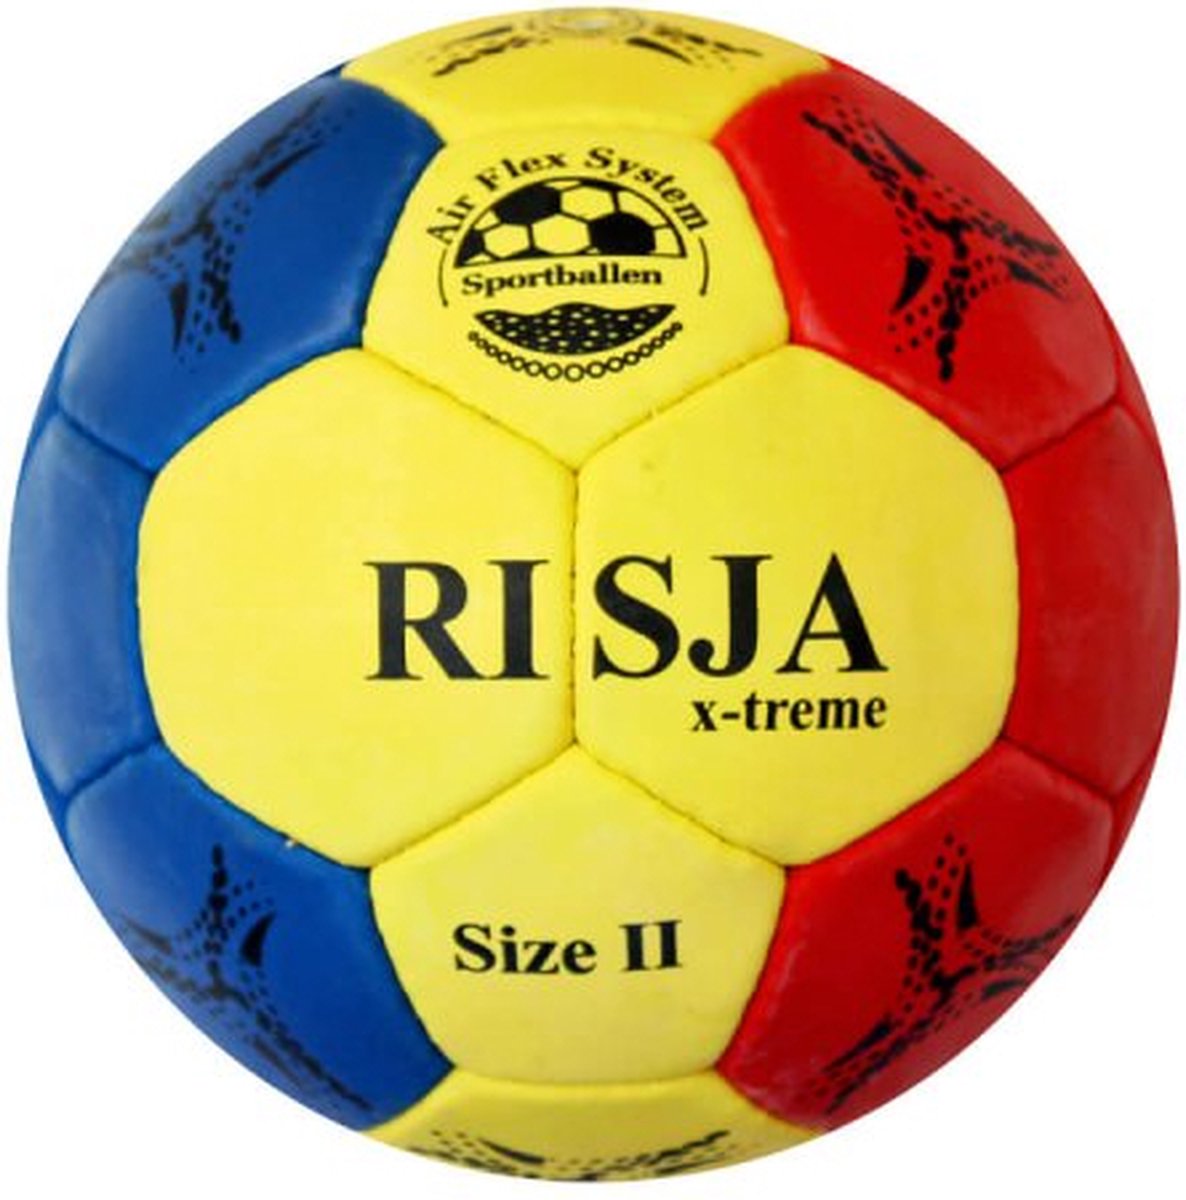 Risja X-treme handbal maat 2 - dames - jeugd - blauw geel rood